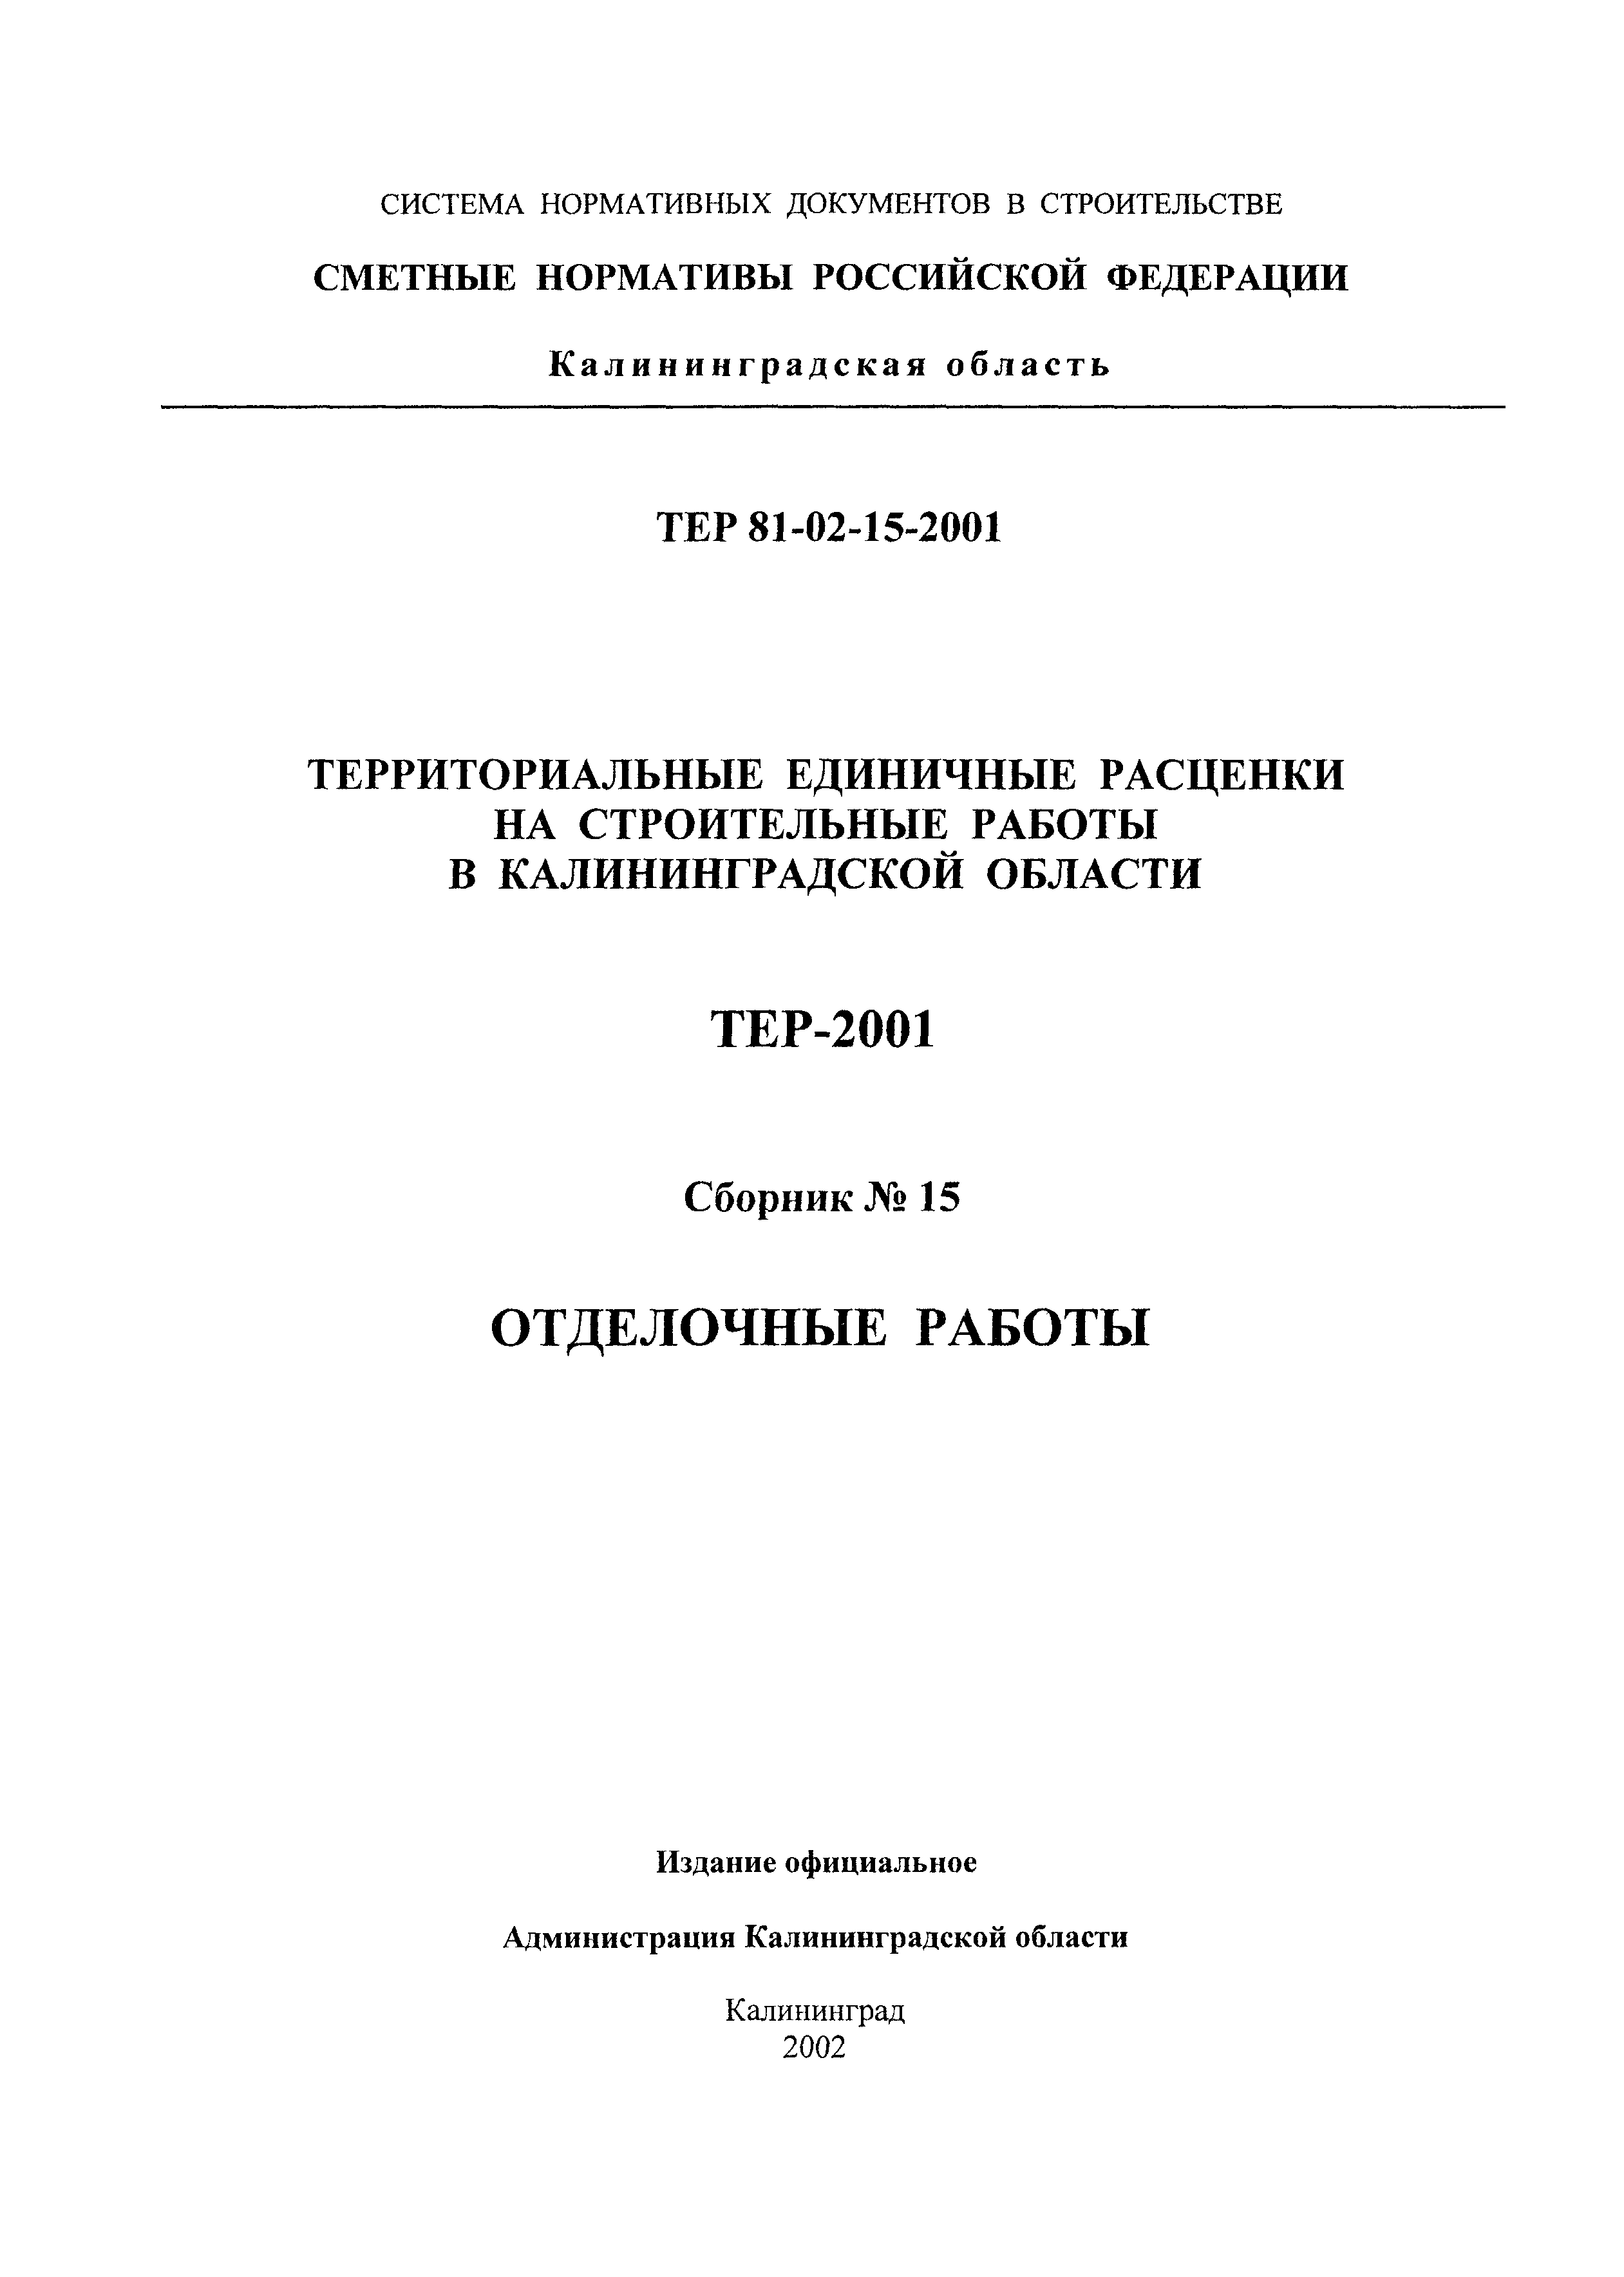 ТЕР Калининградской области 2001-15